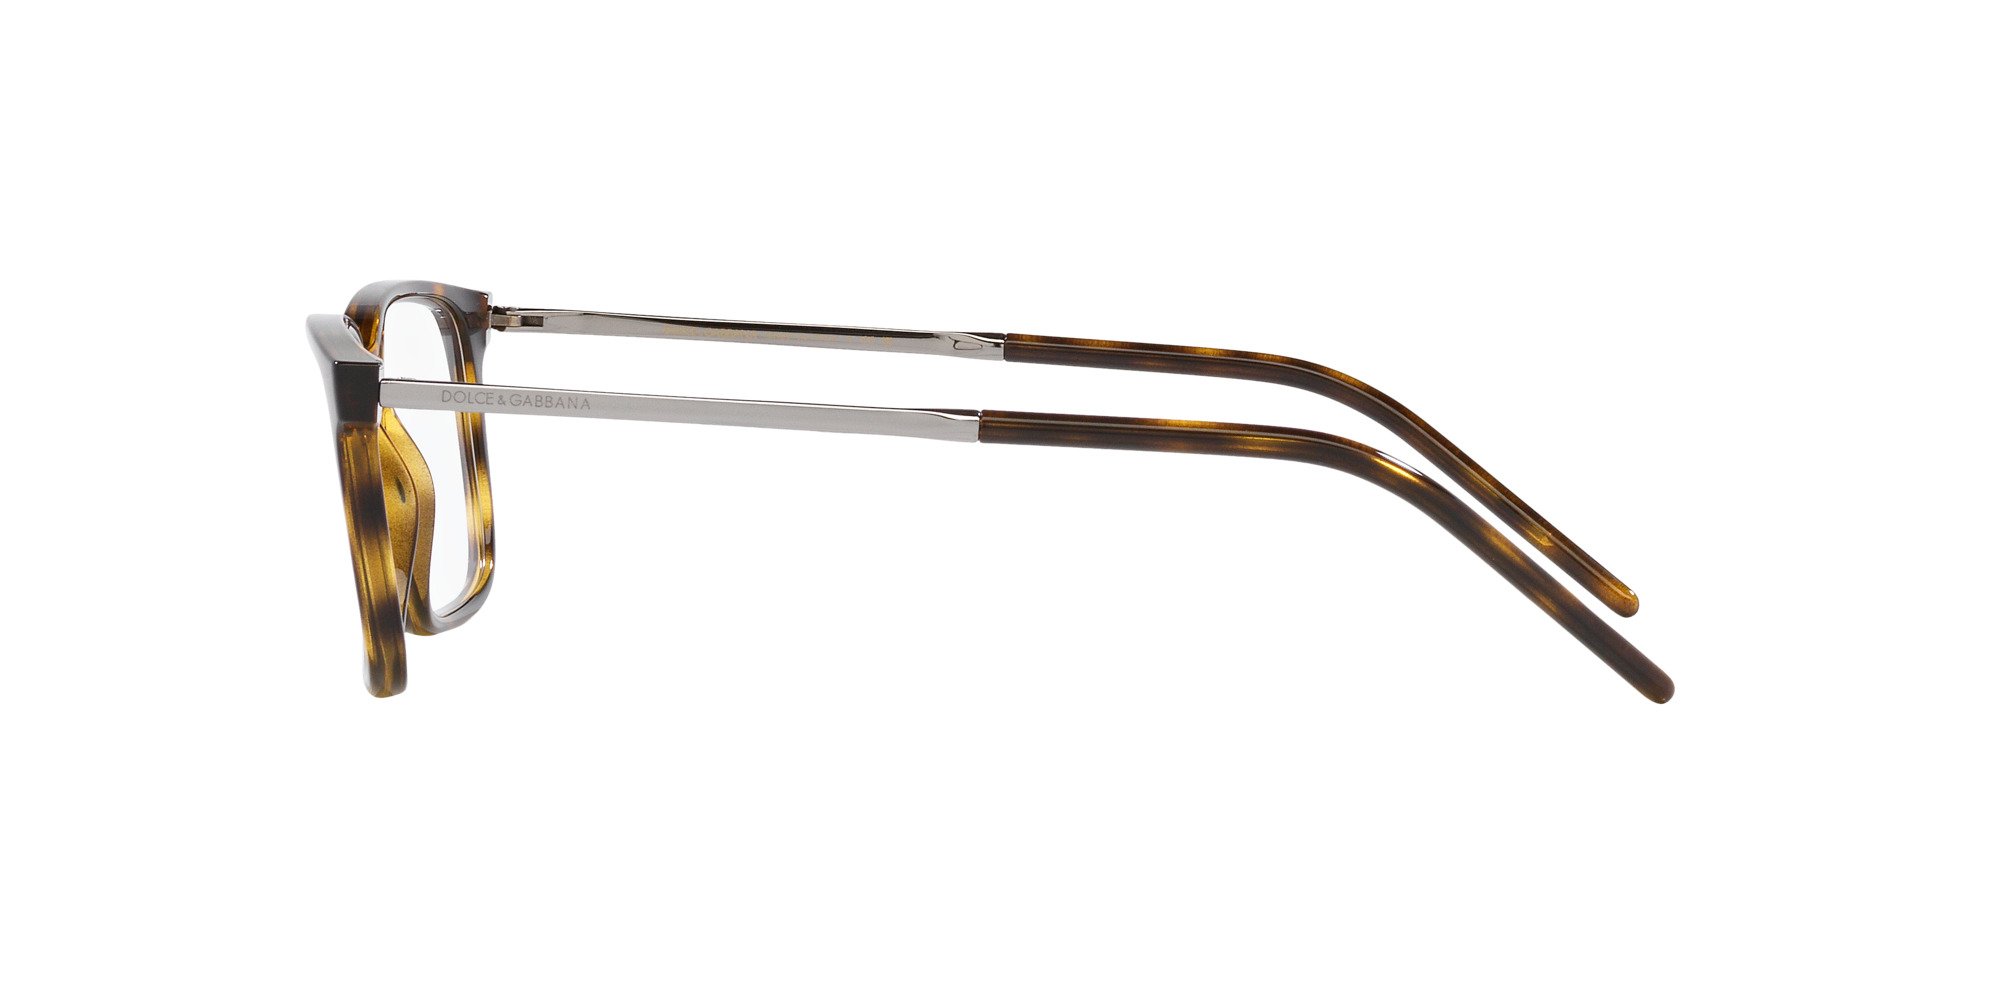 Das Bild zeigt die Korrektionsbrille DG5099 502 von der Marke D&G in havana.